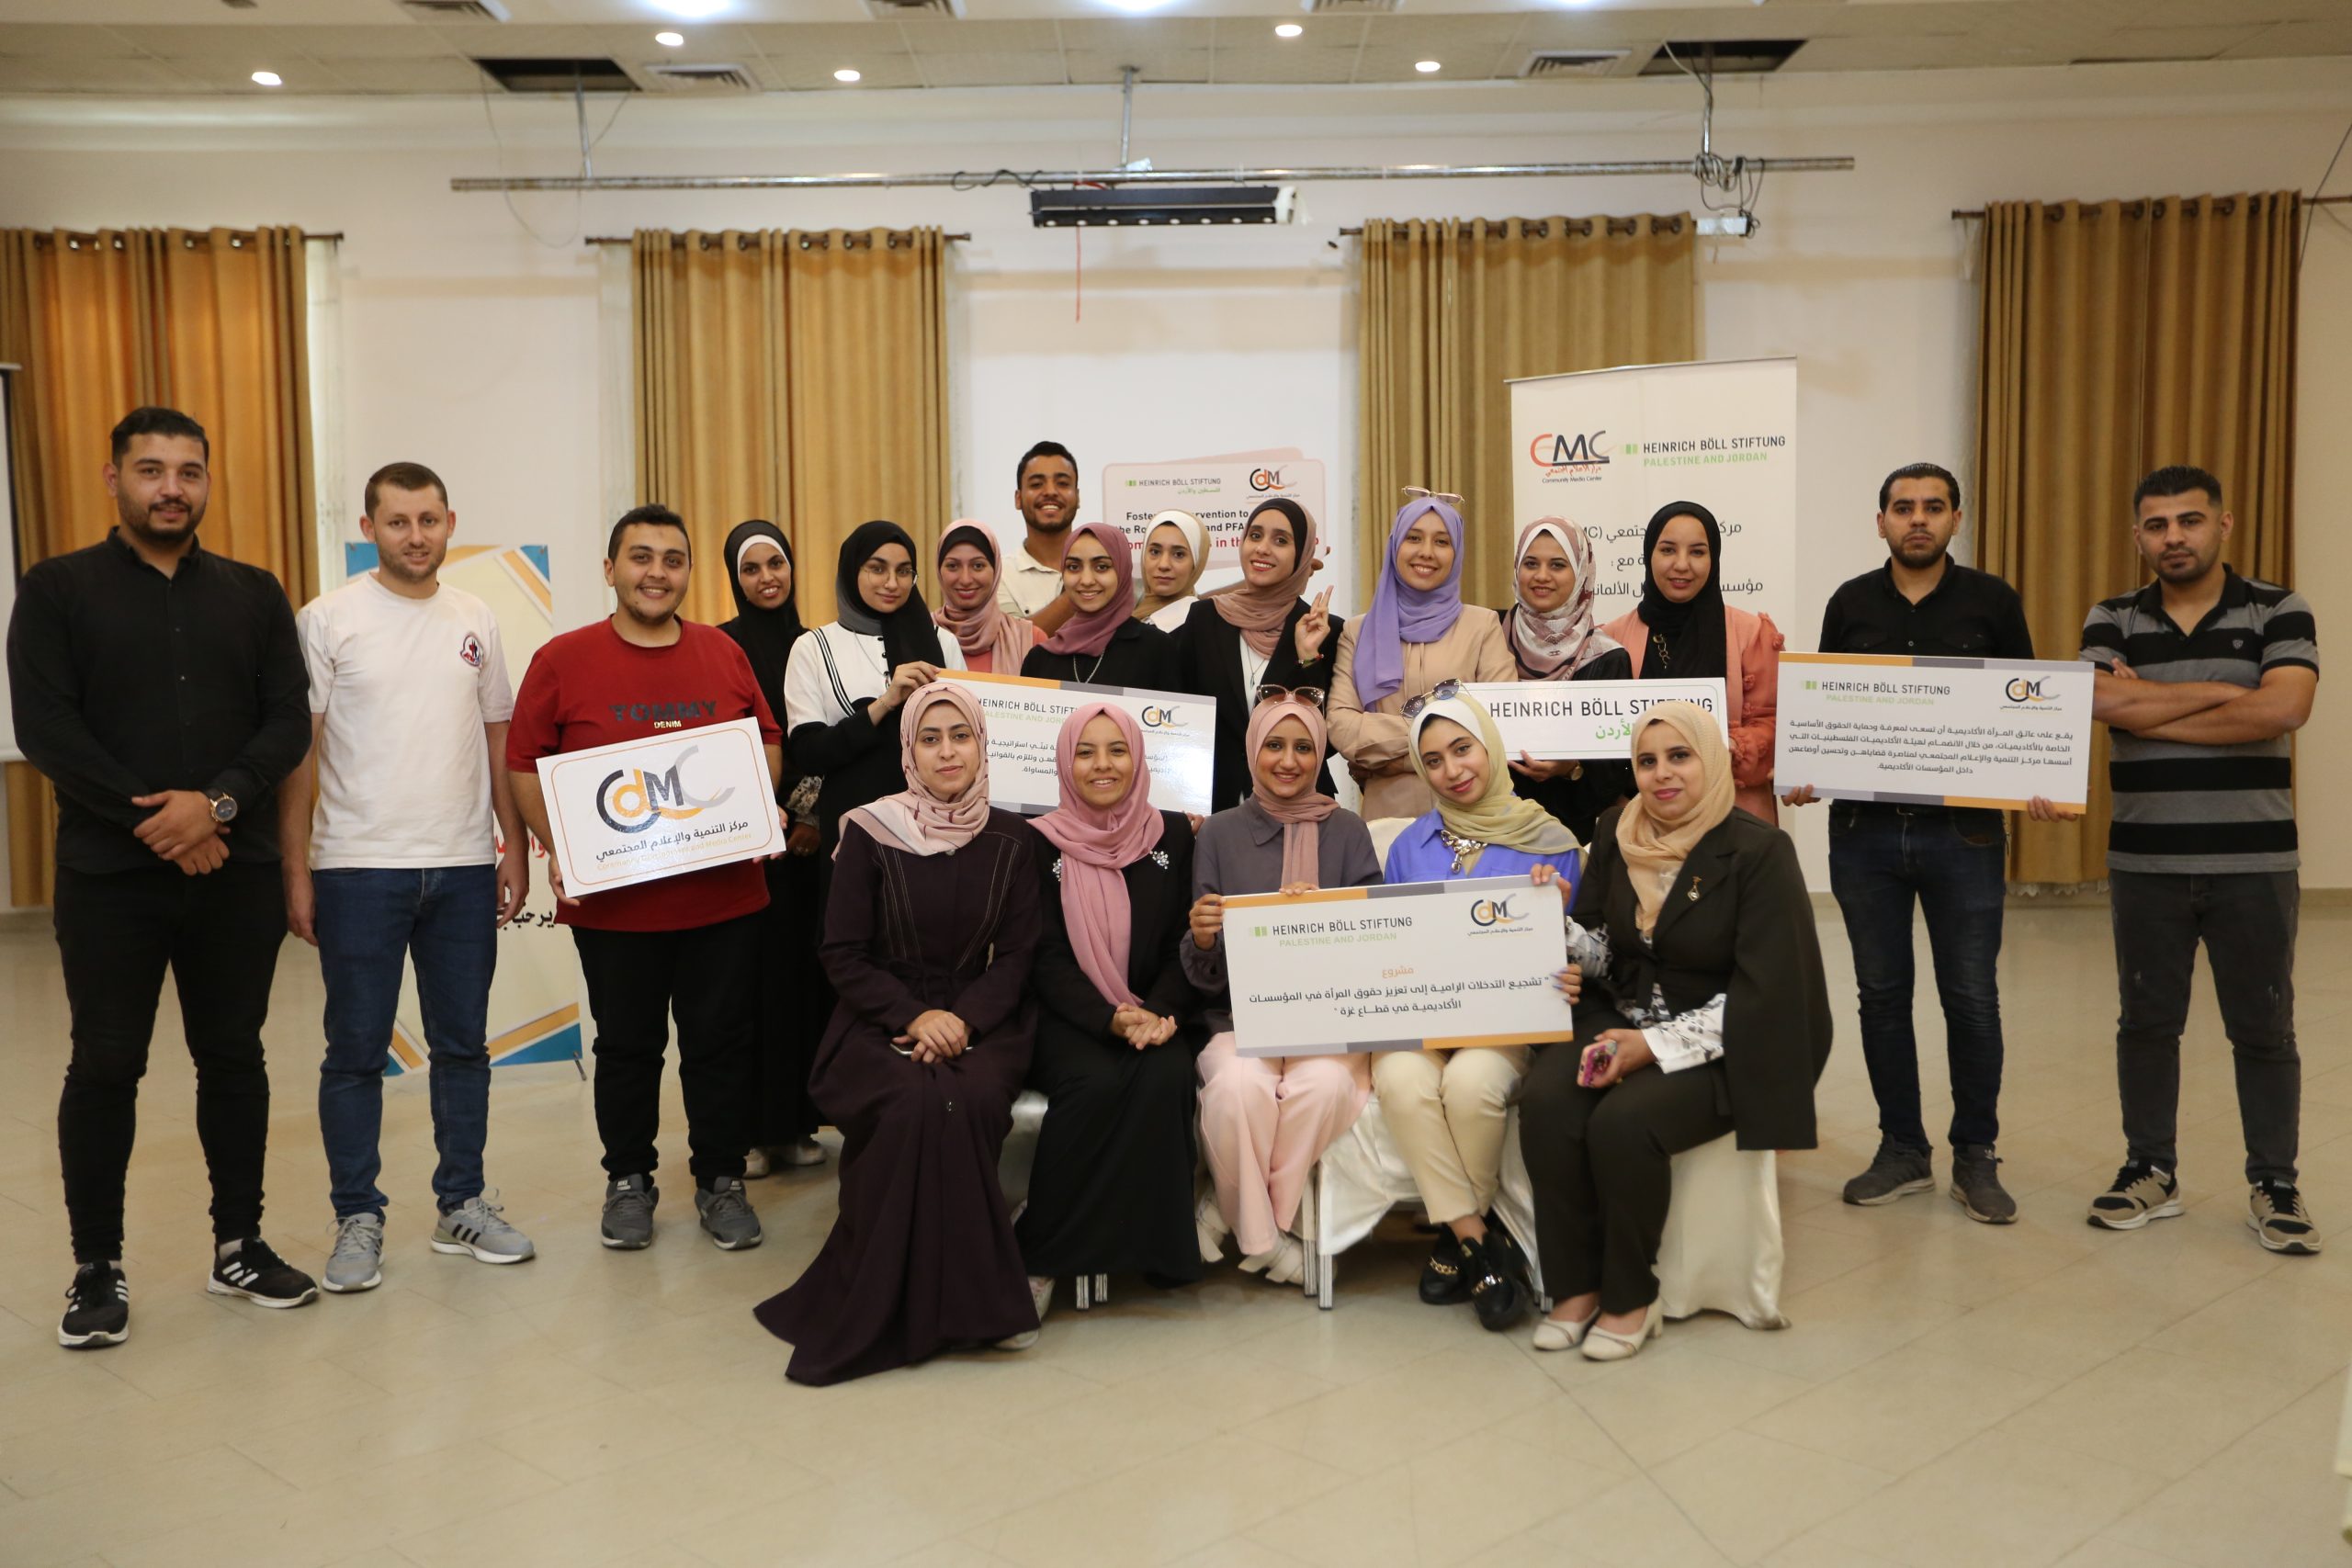 مركز التنمية والإعلام المجتمعي يطلق حملة رقمية ضمن مشروع "التدخلات الرامية لتعزيز حقوق النساء في قطاع غزة"